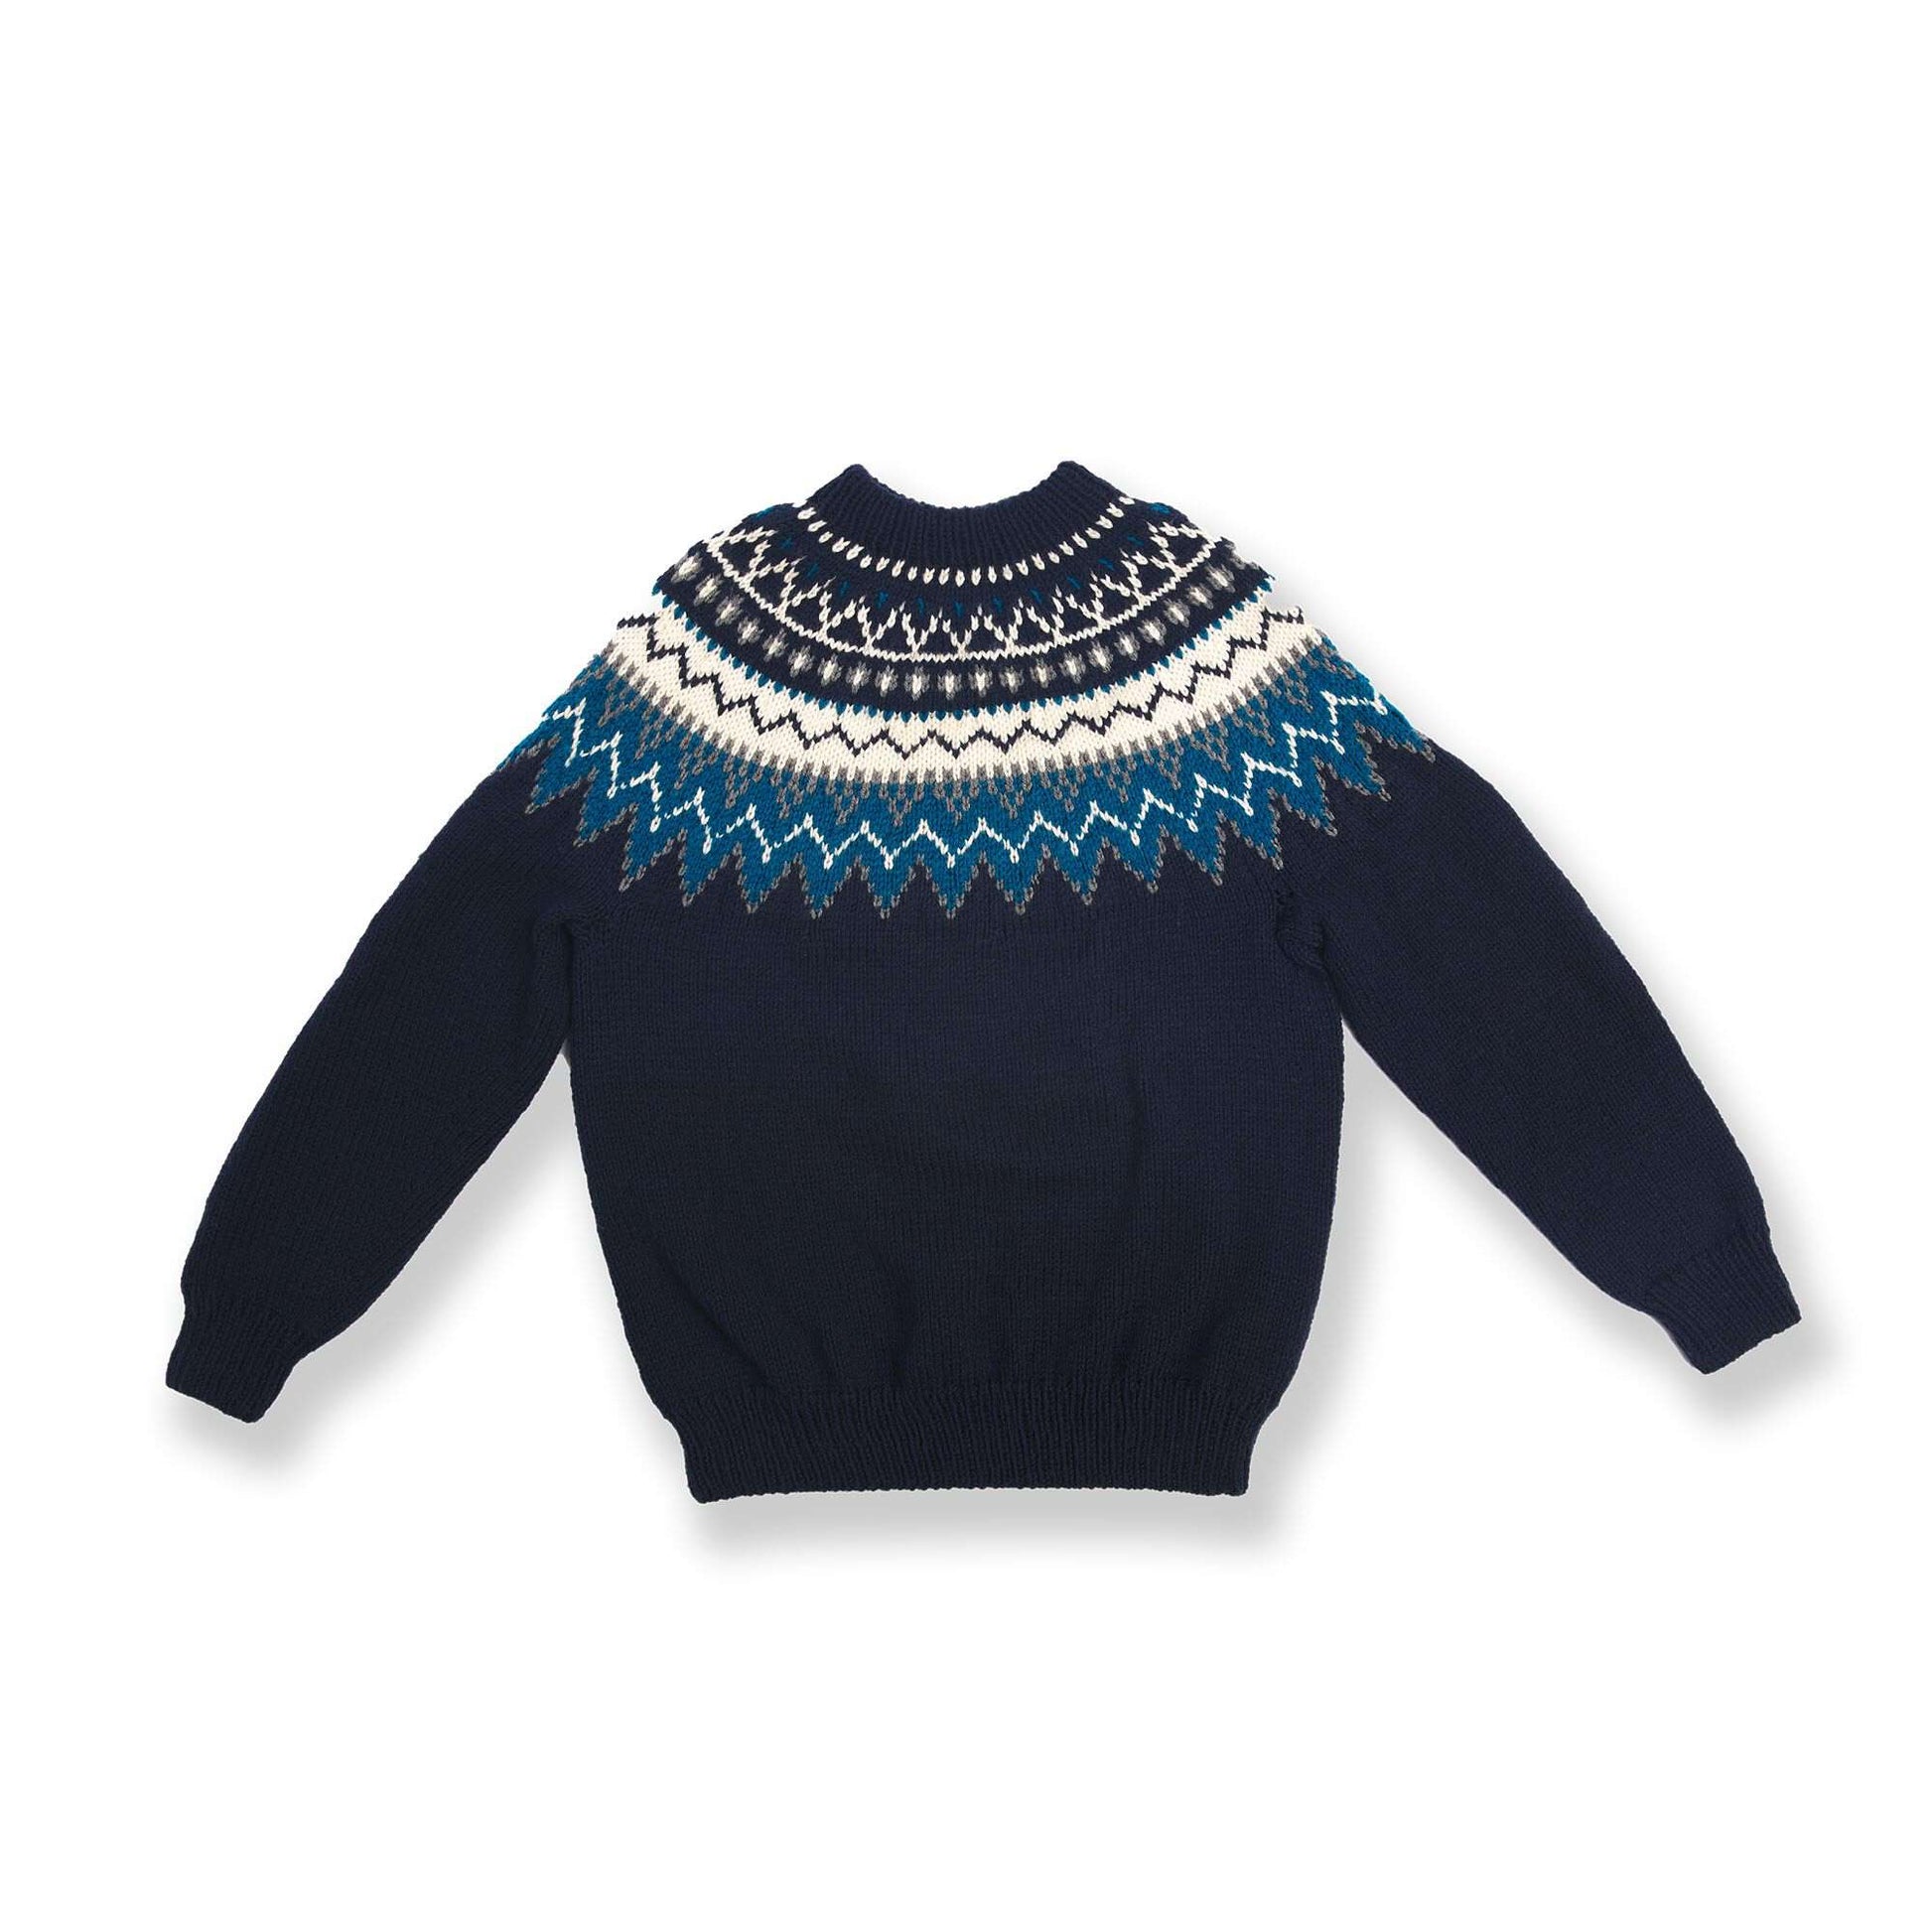 Free Bernat Family Knit Adult Yoke Sweater Pattern